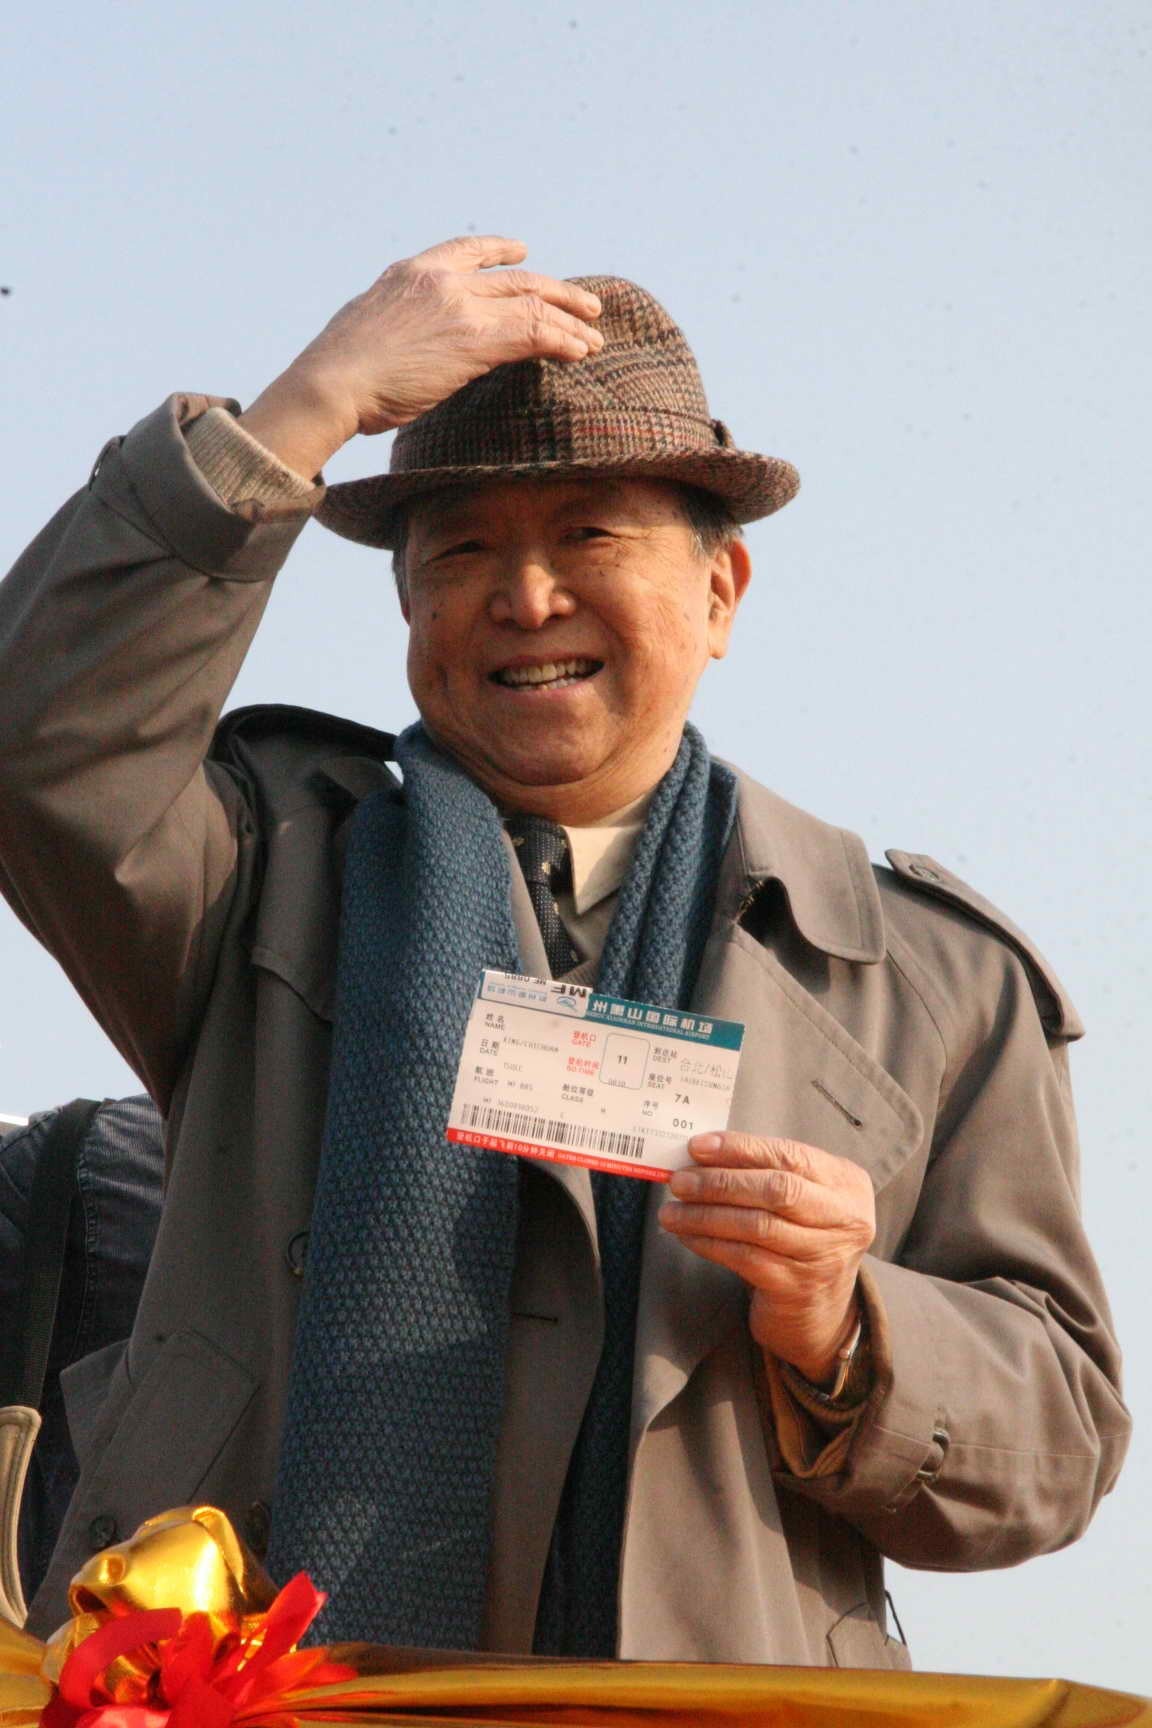 76歲的金先生拿到了杭州到台灣首發直航班的一號票，並告訴記者「作為第一號乘員，我此刻非常激動。」臨登機前，金先生還不忘揮舞着這張特殊的機票，向前來送行的人致意。（圖片來源：中新社）